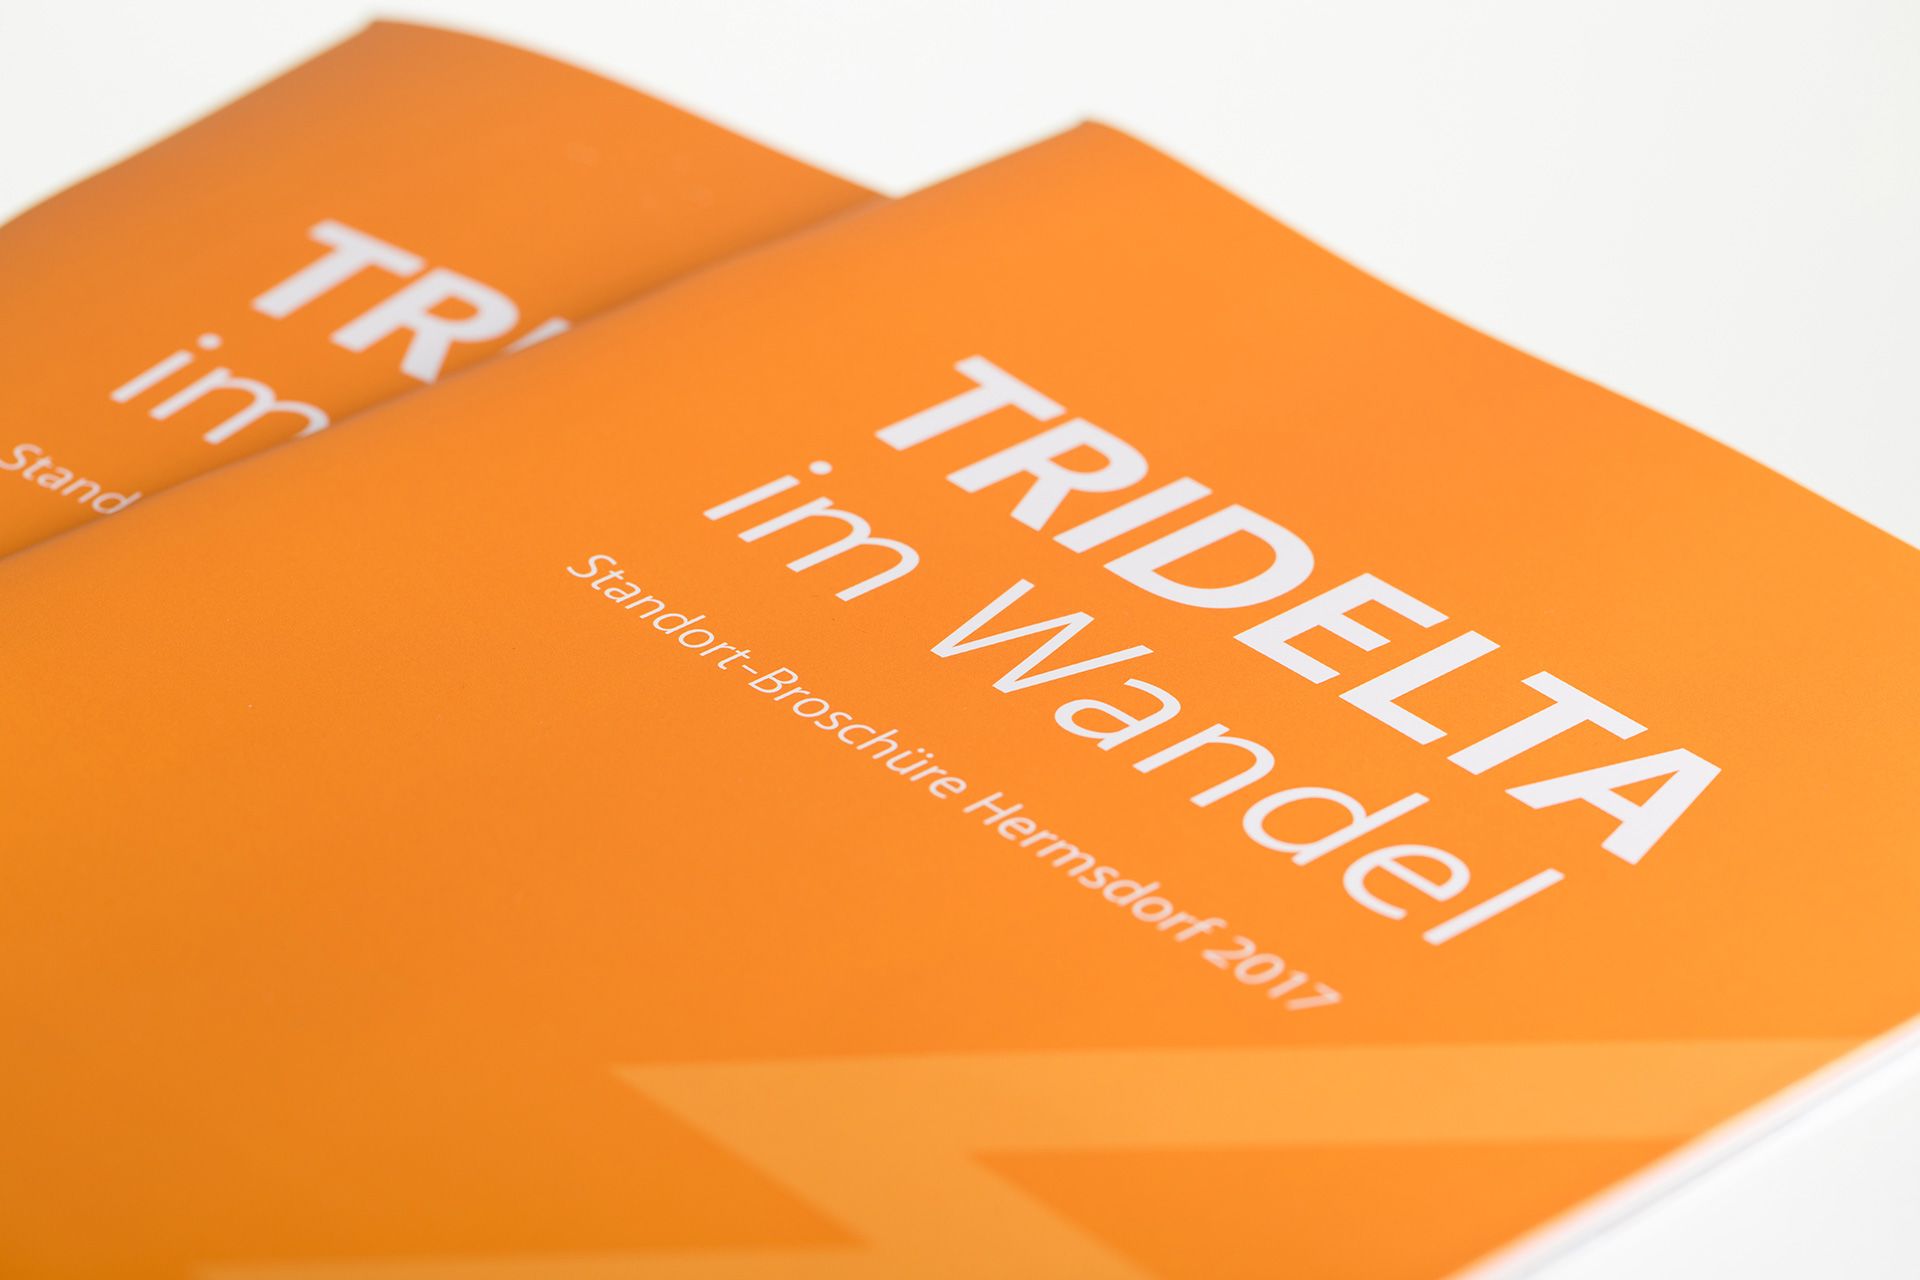 Das Cover der Standortbroschüre "Tridelta im Wandel"